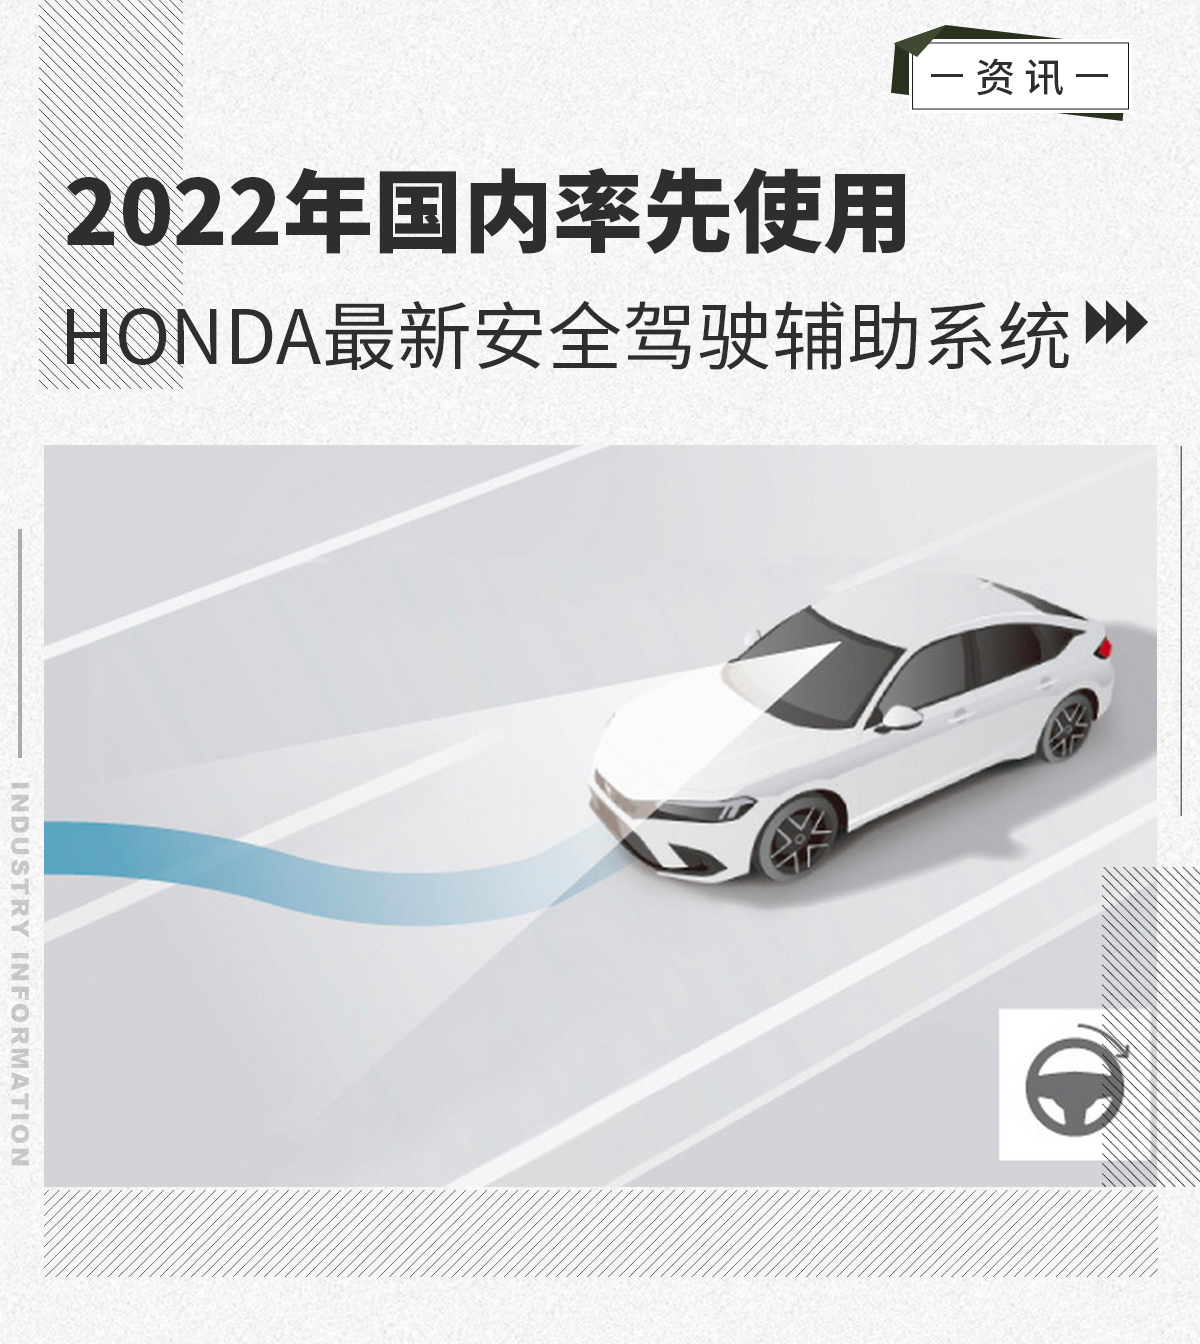 Honda最新安全驾驶辅助系统 明年率先在国内使用